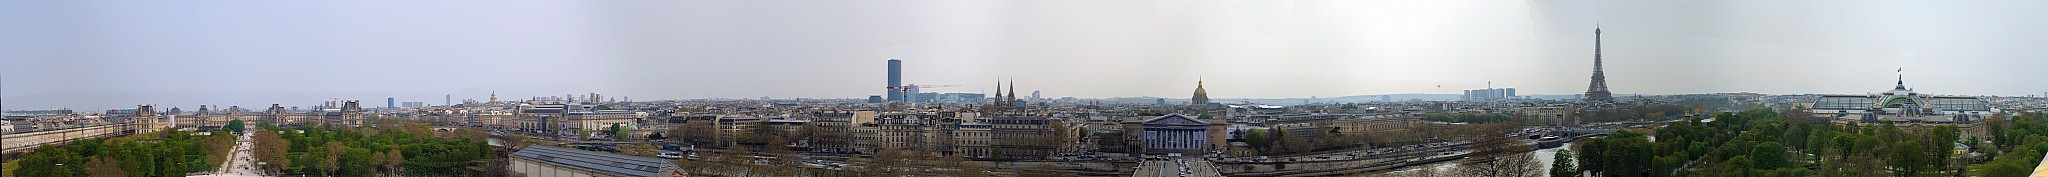 Paris vu d'en haut,  Place de la Concorde